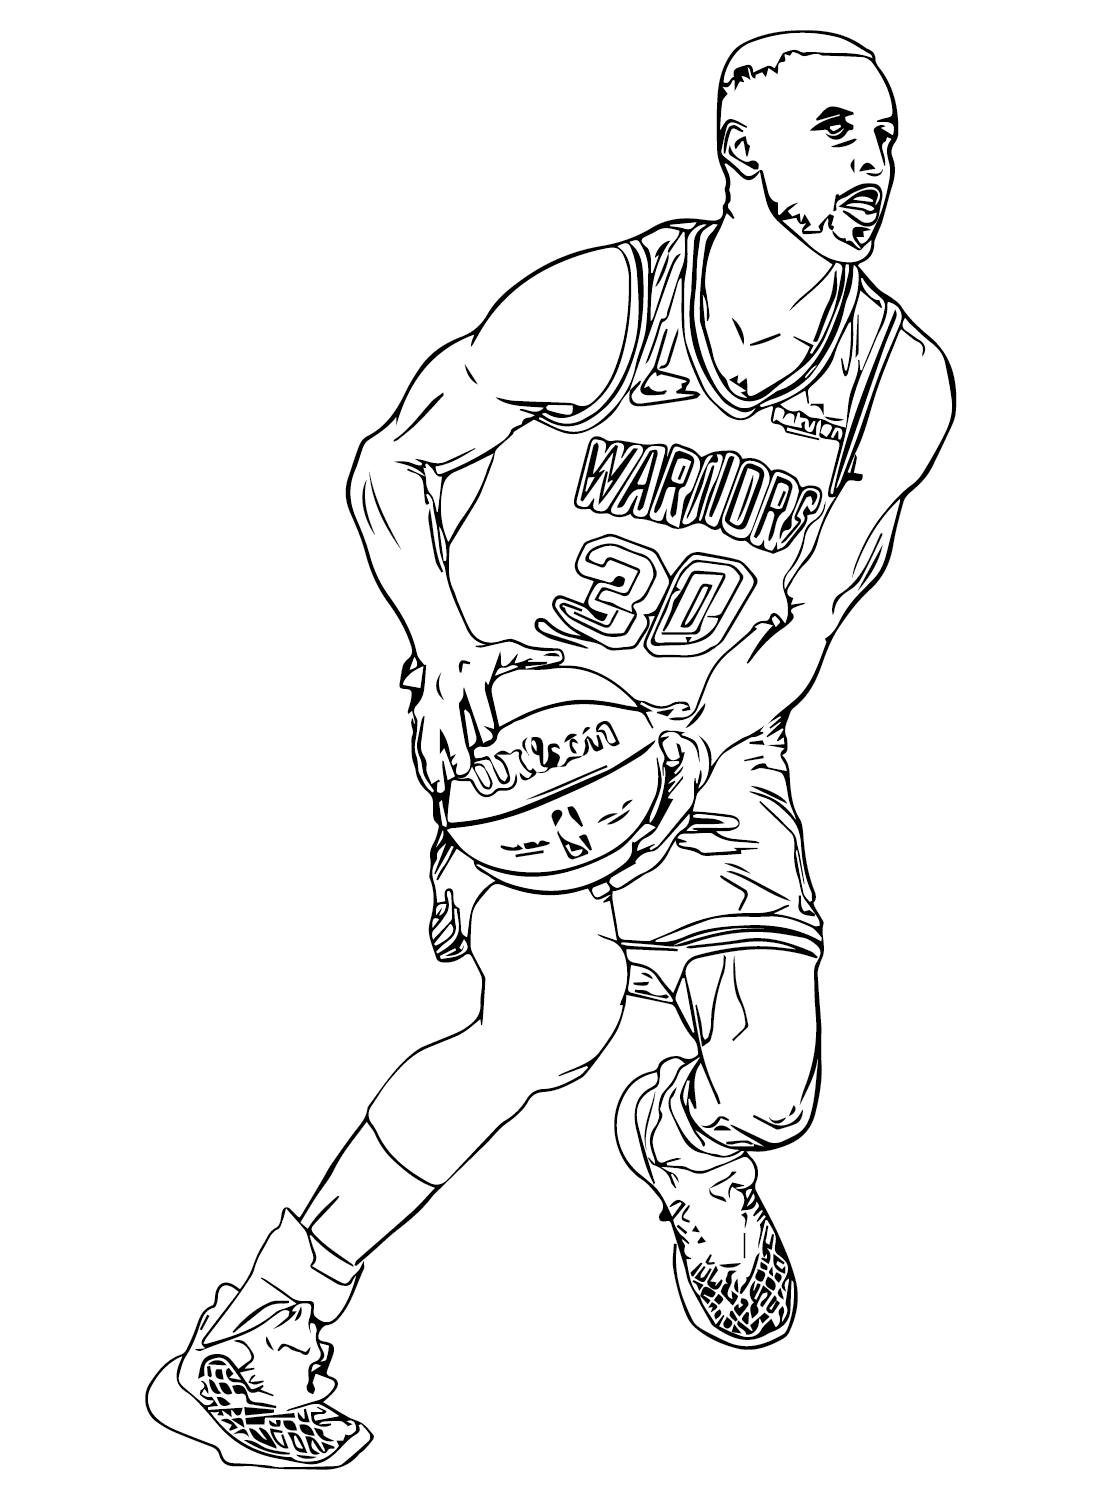 Стивен Карри играет в баскетбол от Стивена Карри